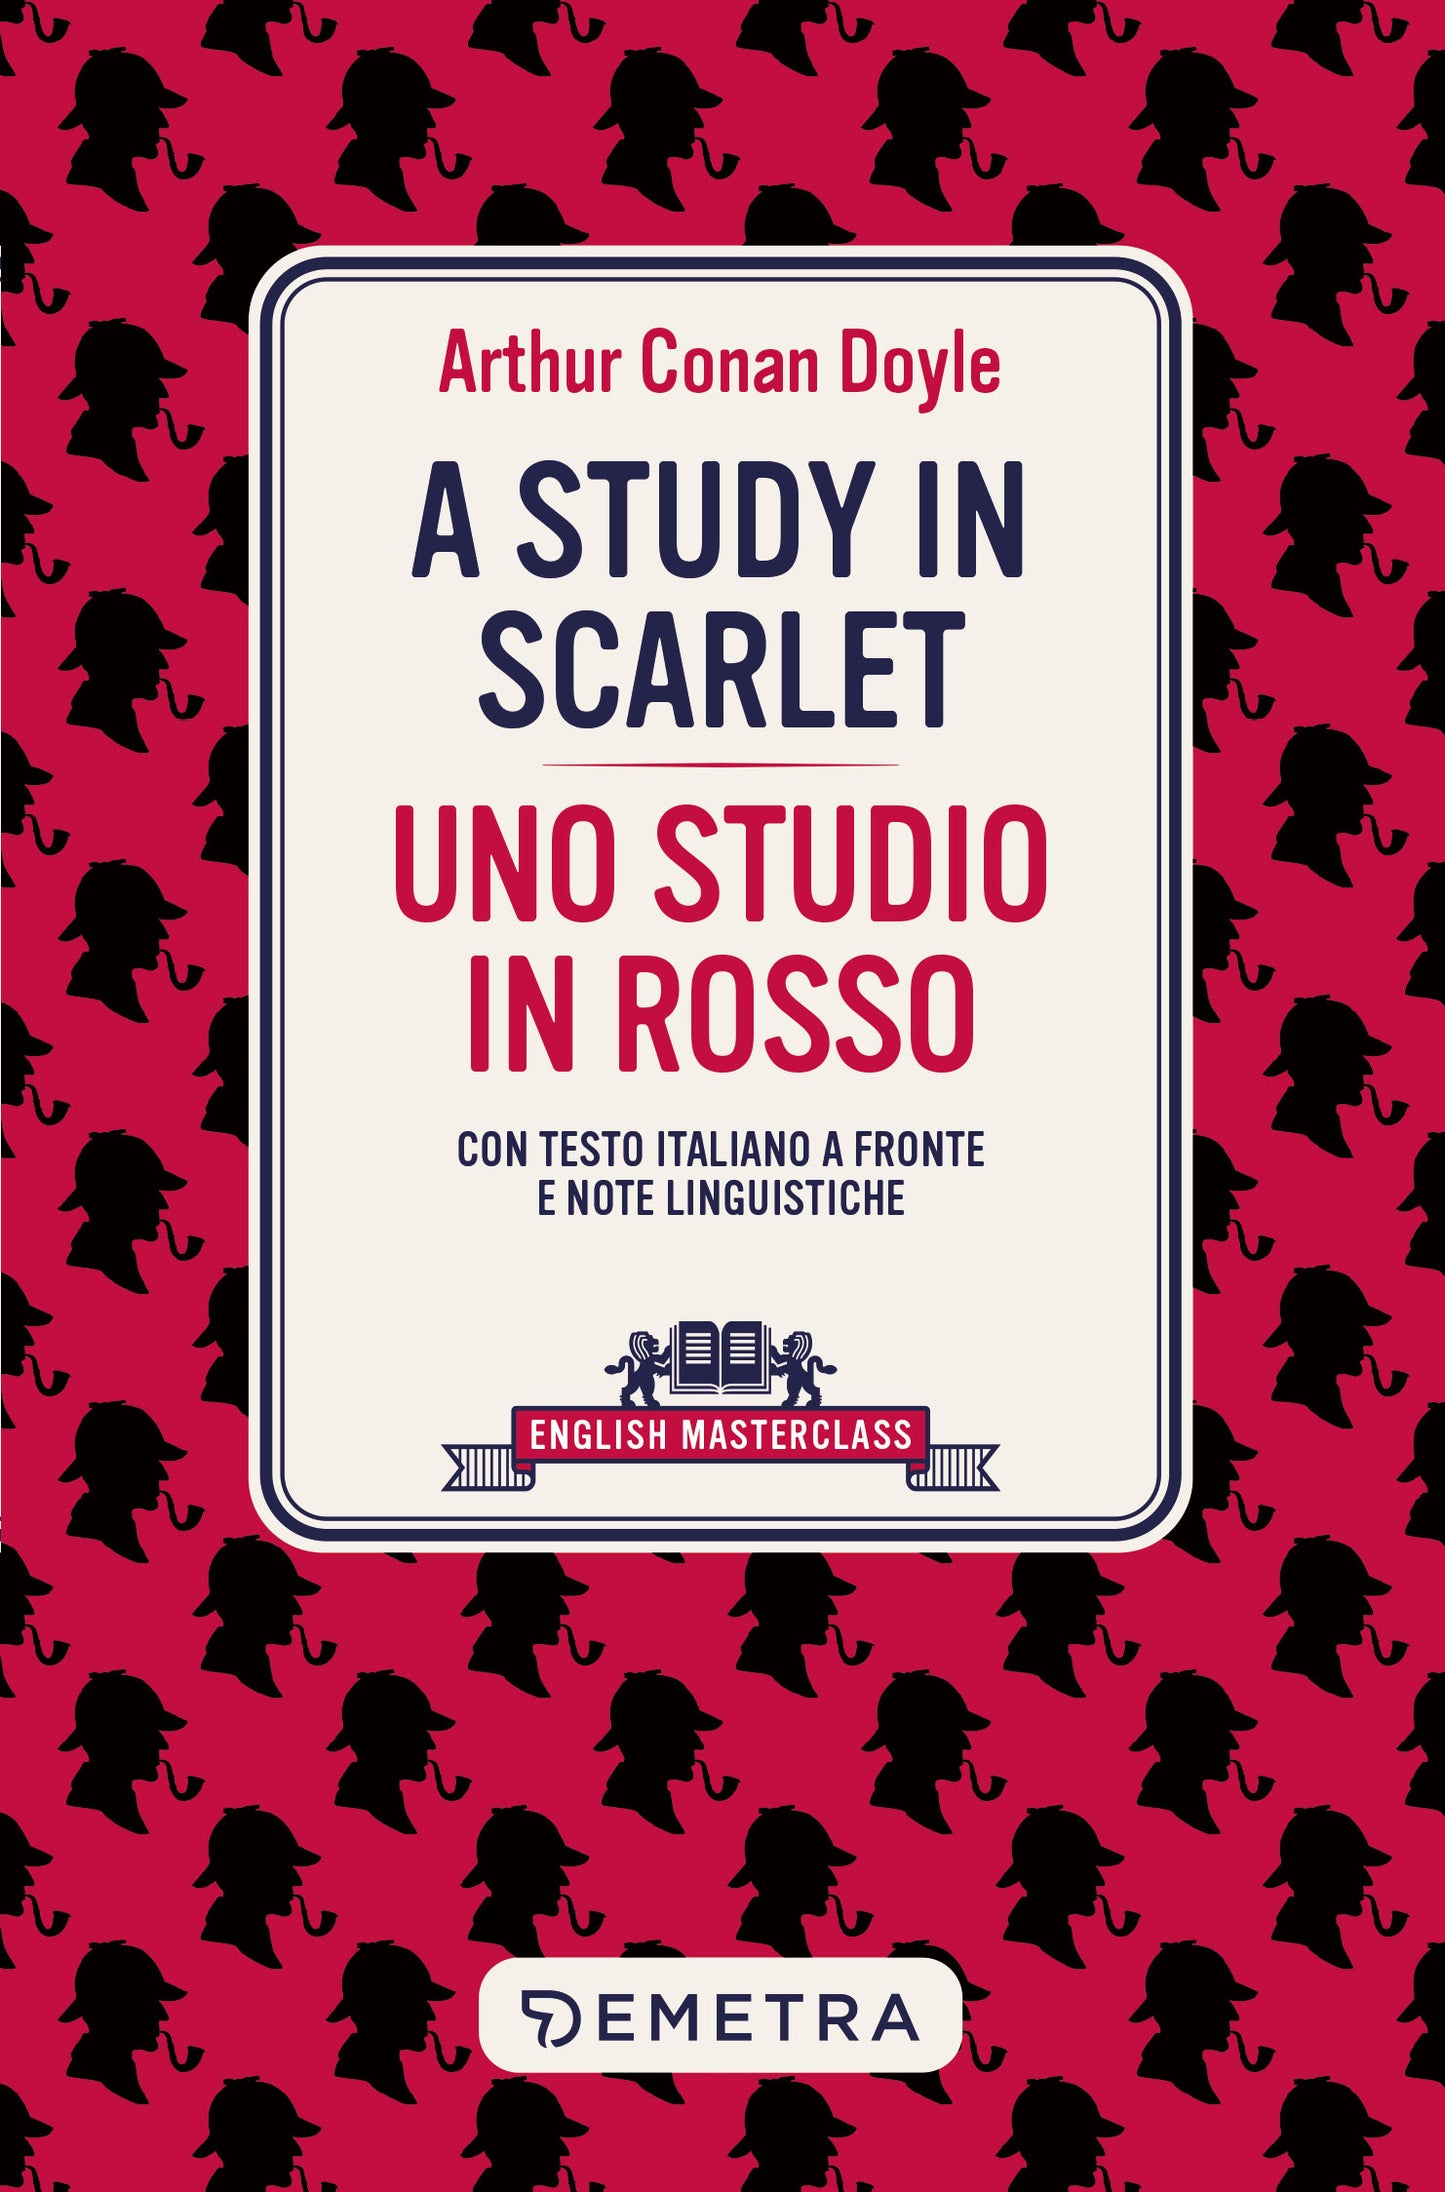 A Study in Scarlet - Uno studio in rosso. CON TESTO ITALIANO A FRONTE E NOTE LINGUISTICHE